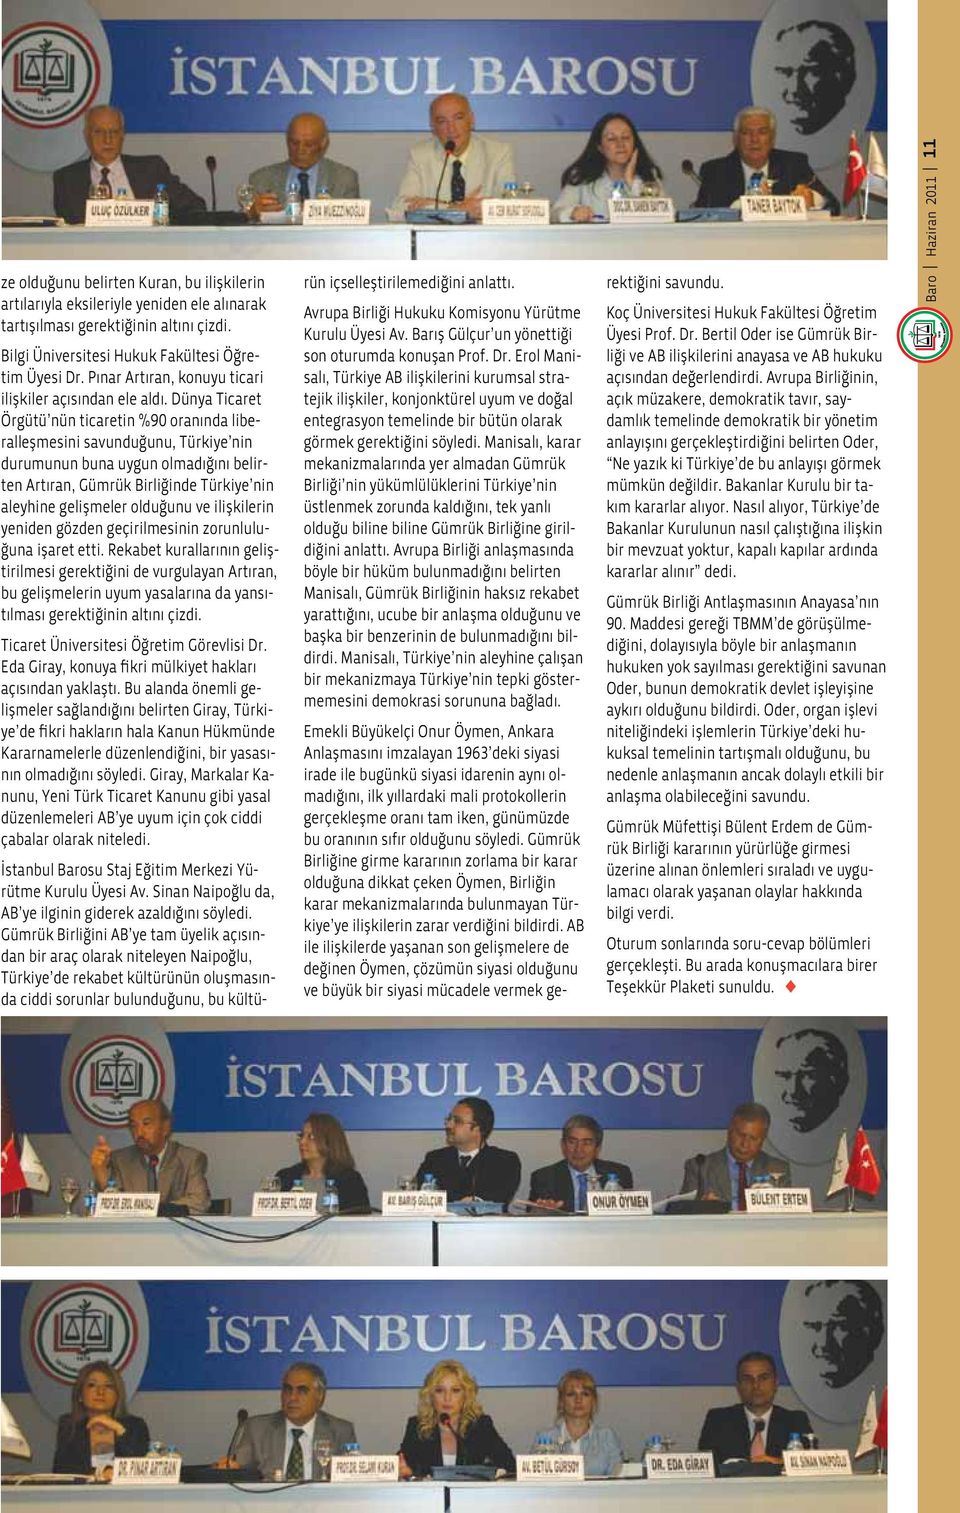 Dünya Ticaret Örgütü nün ticaretin %90 oranında liberalleşmesini savunduğunu, Türkiye nin durumunun buna uygun olmadığını belirten Artıran, Gümrük Birliğinde Türkiye nin aleyhine gelişmeler olduğunu